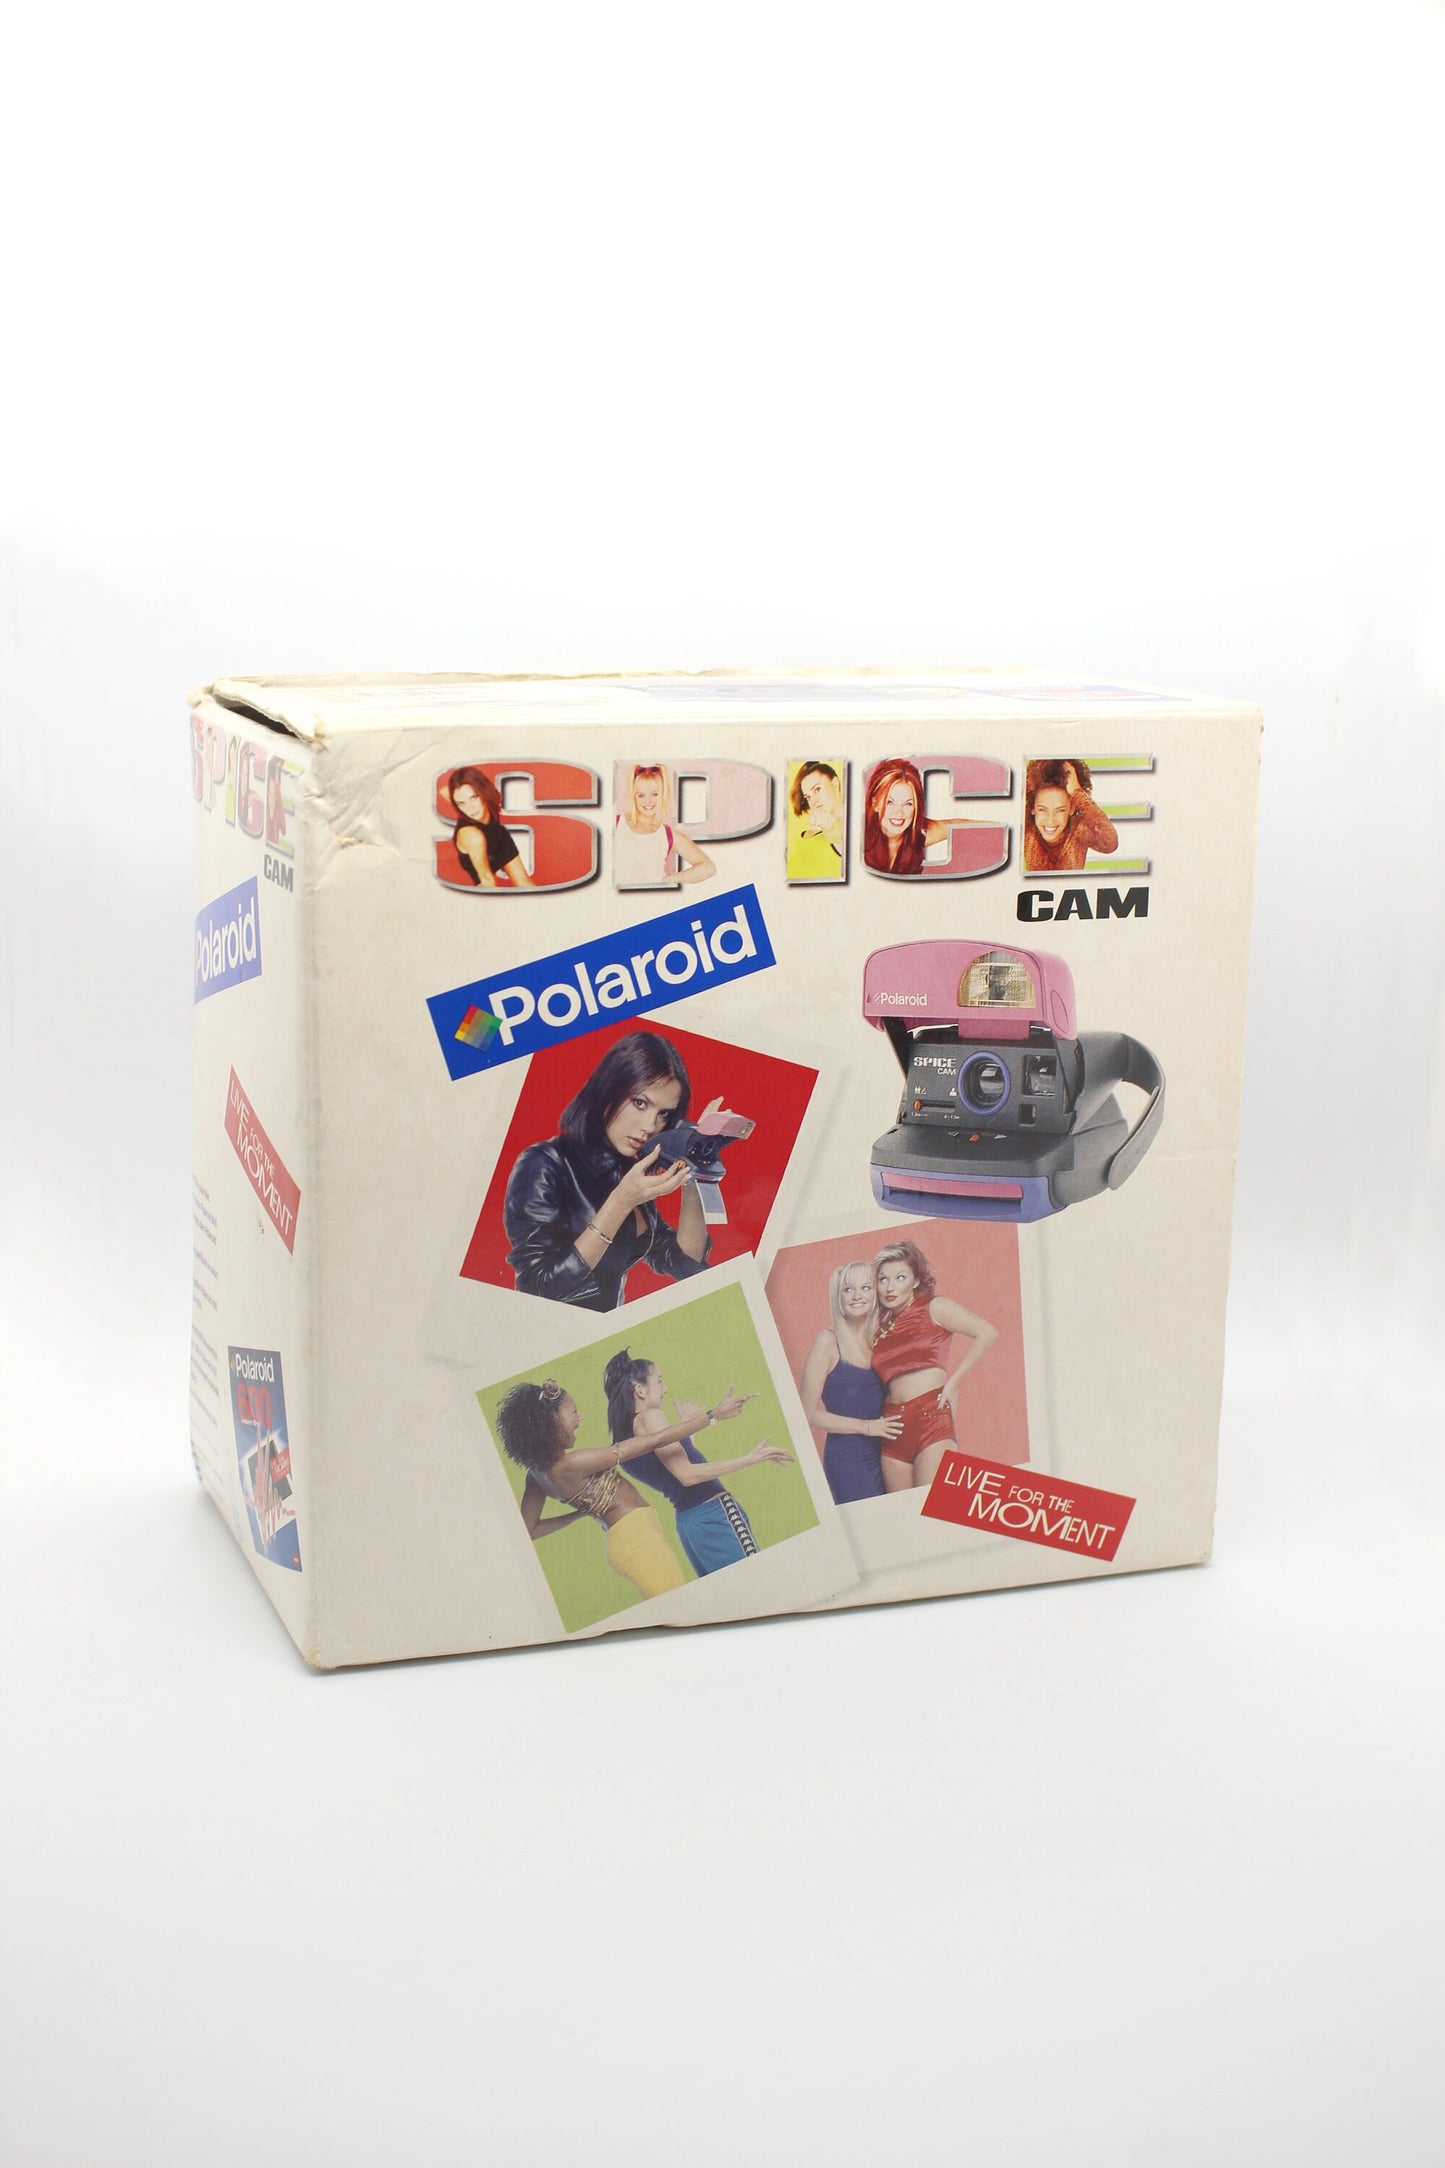 Polaroid SPICE CAM [includes original box, original stickers and original instructions book]